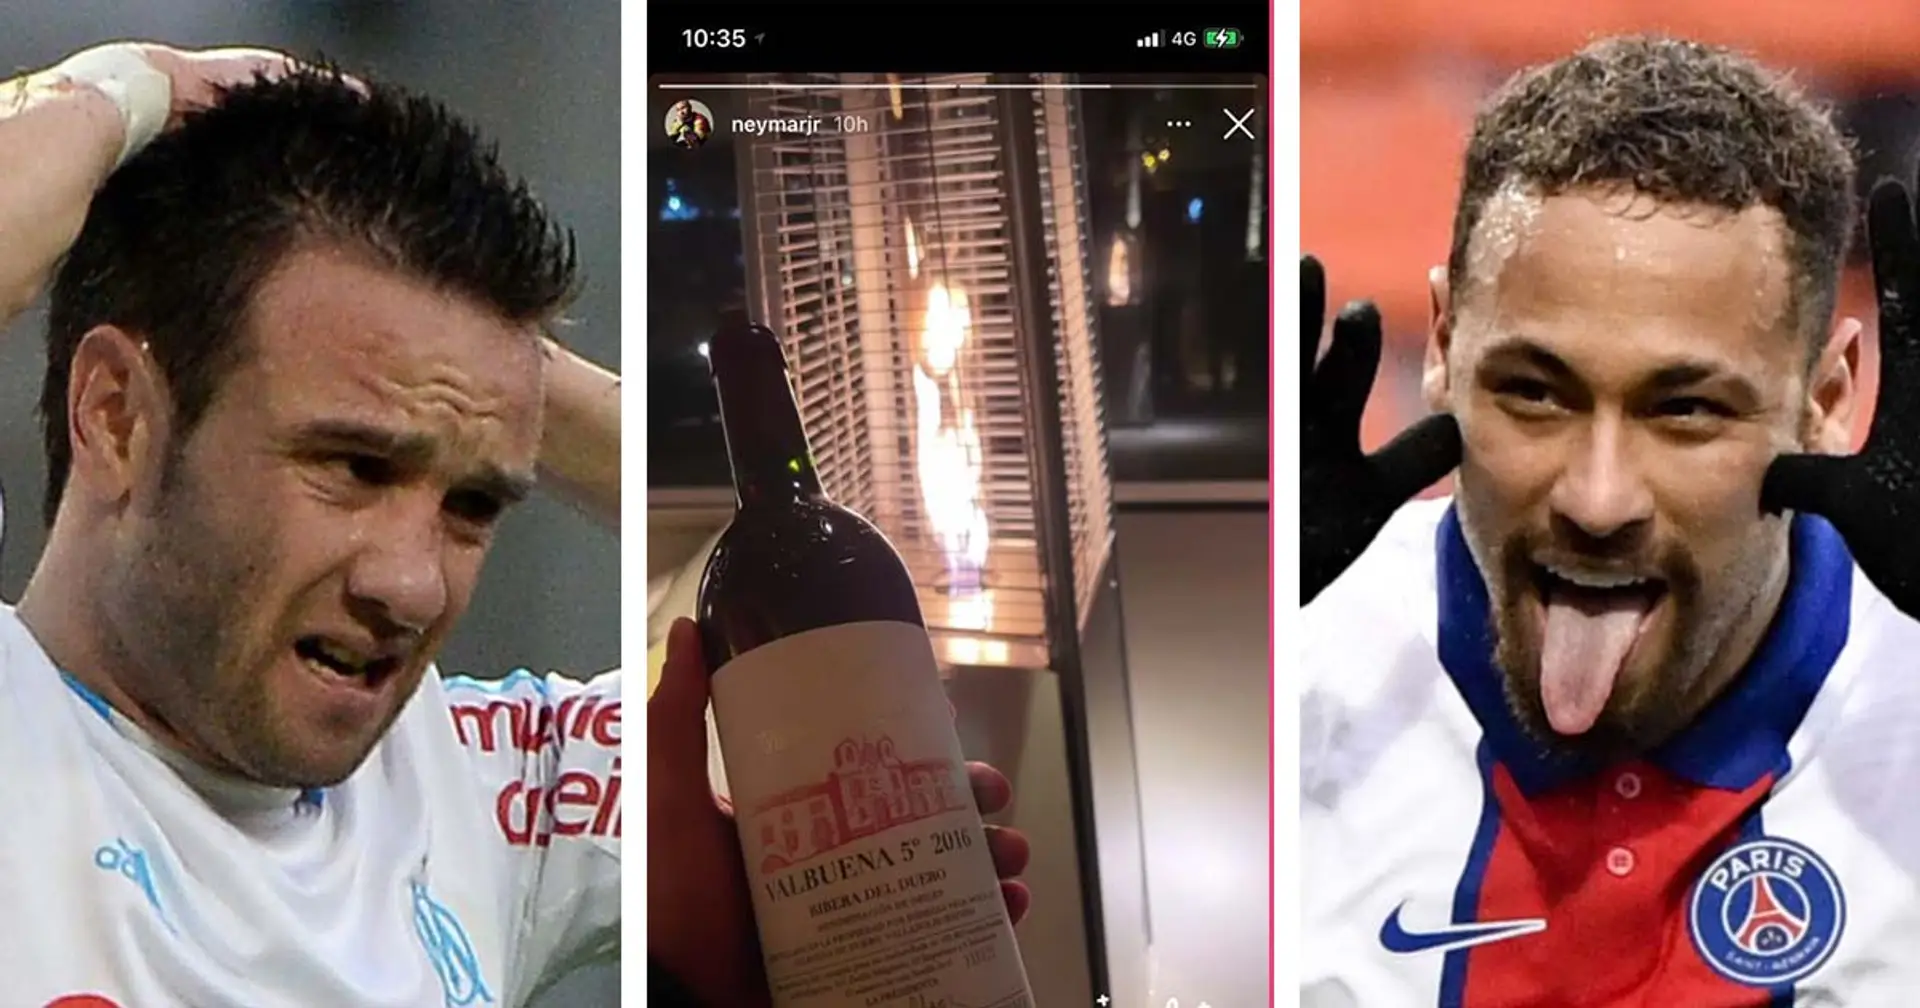 Neymar aperçu avec une bouteille de "Valbuena", un fan parisien place une vanne parfaite à l'endroit de l'OM